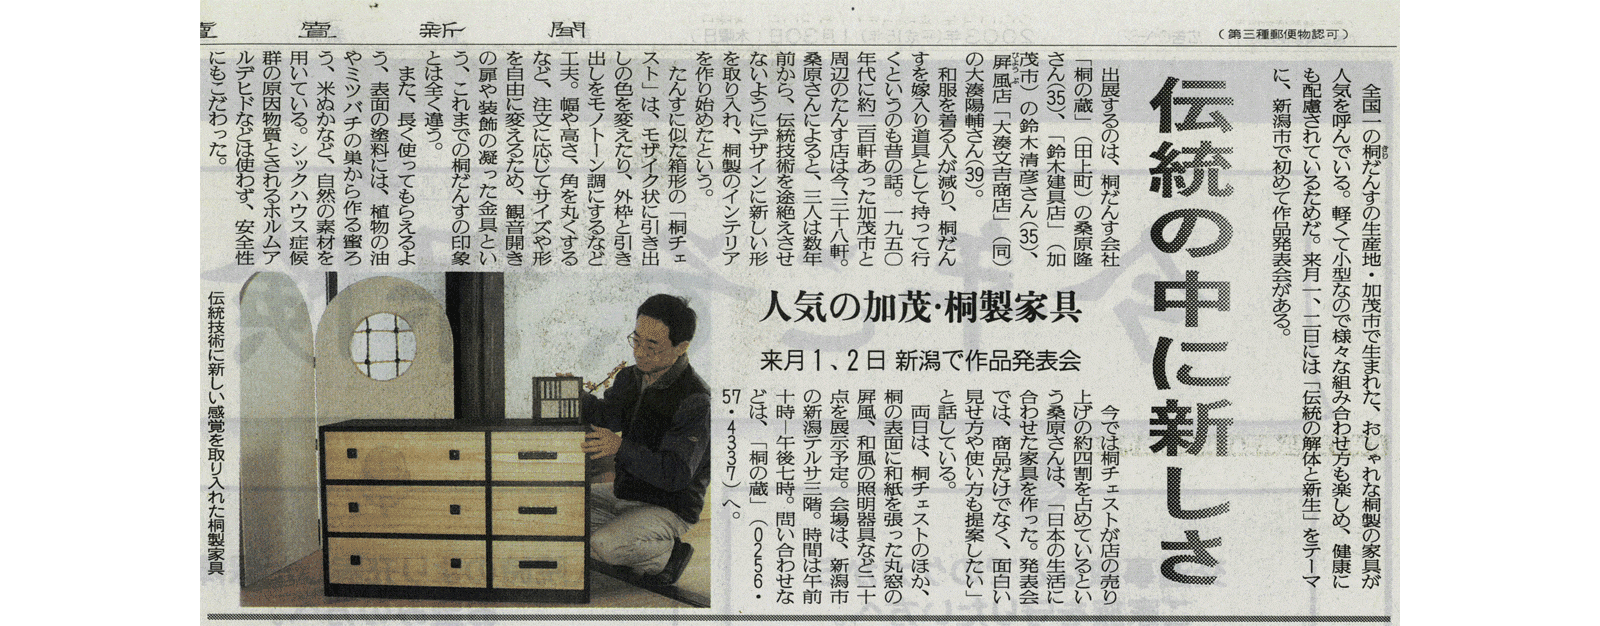 2003年1月30日 読売新聞取材